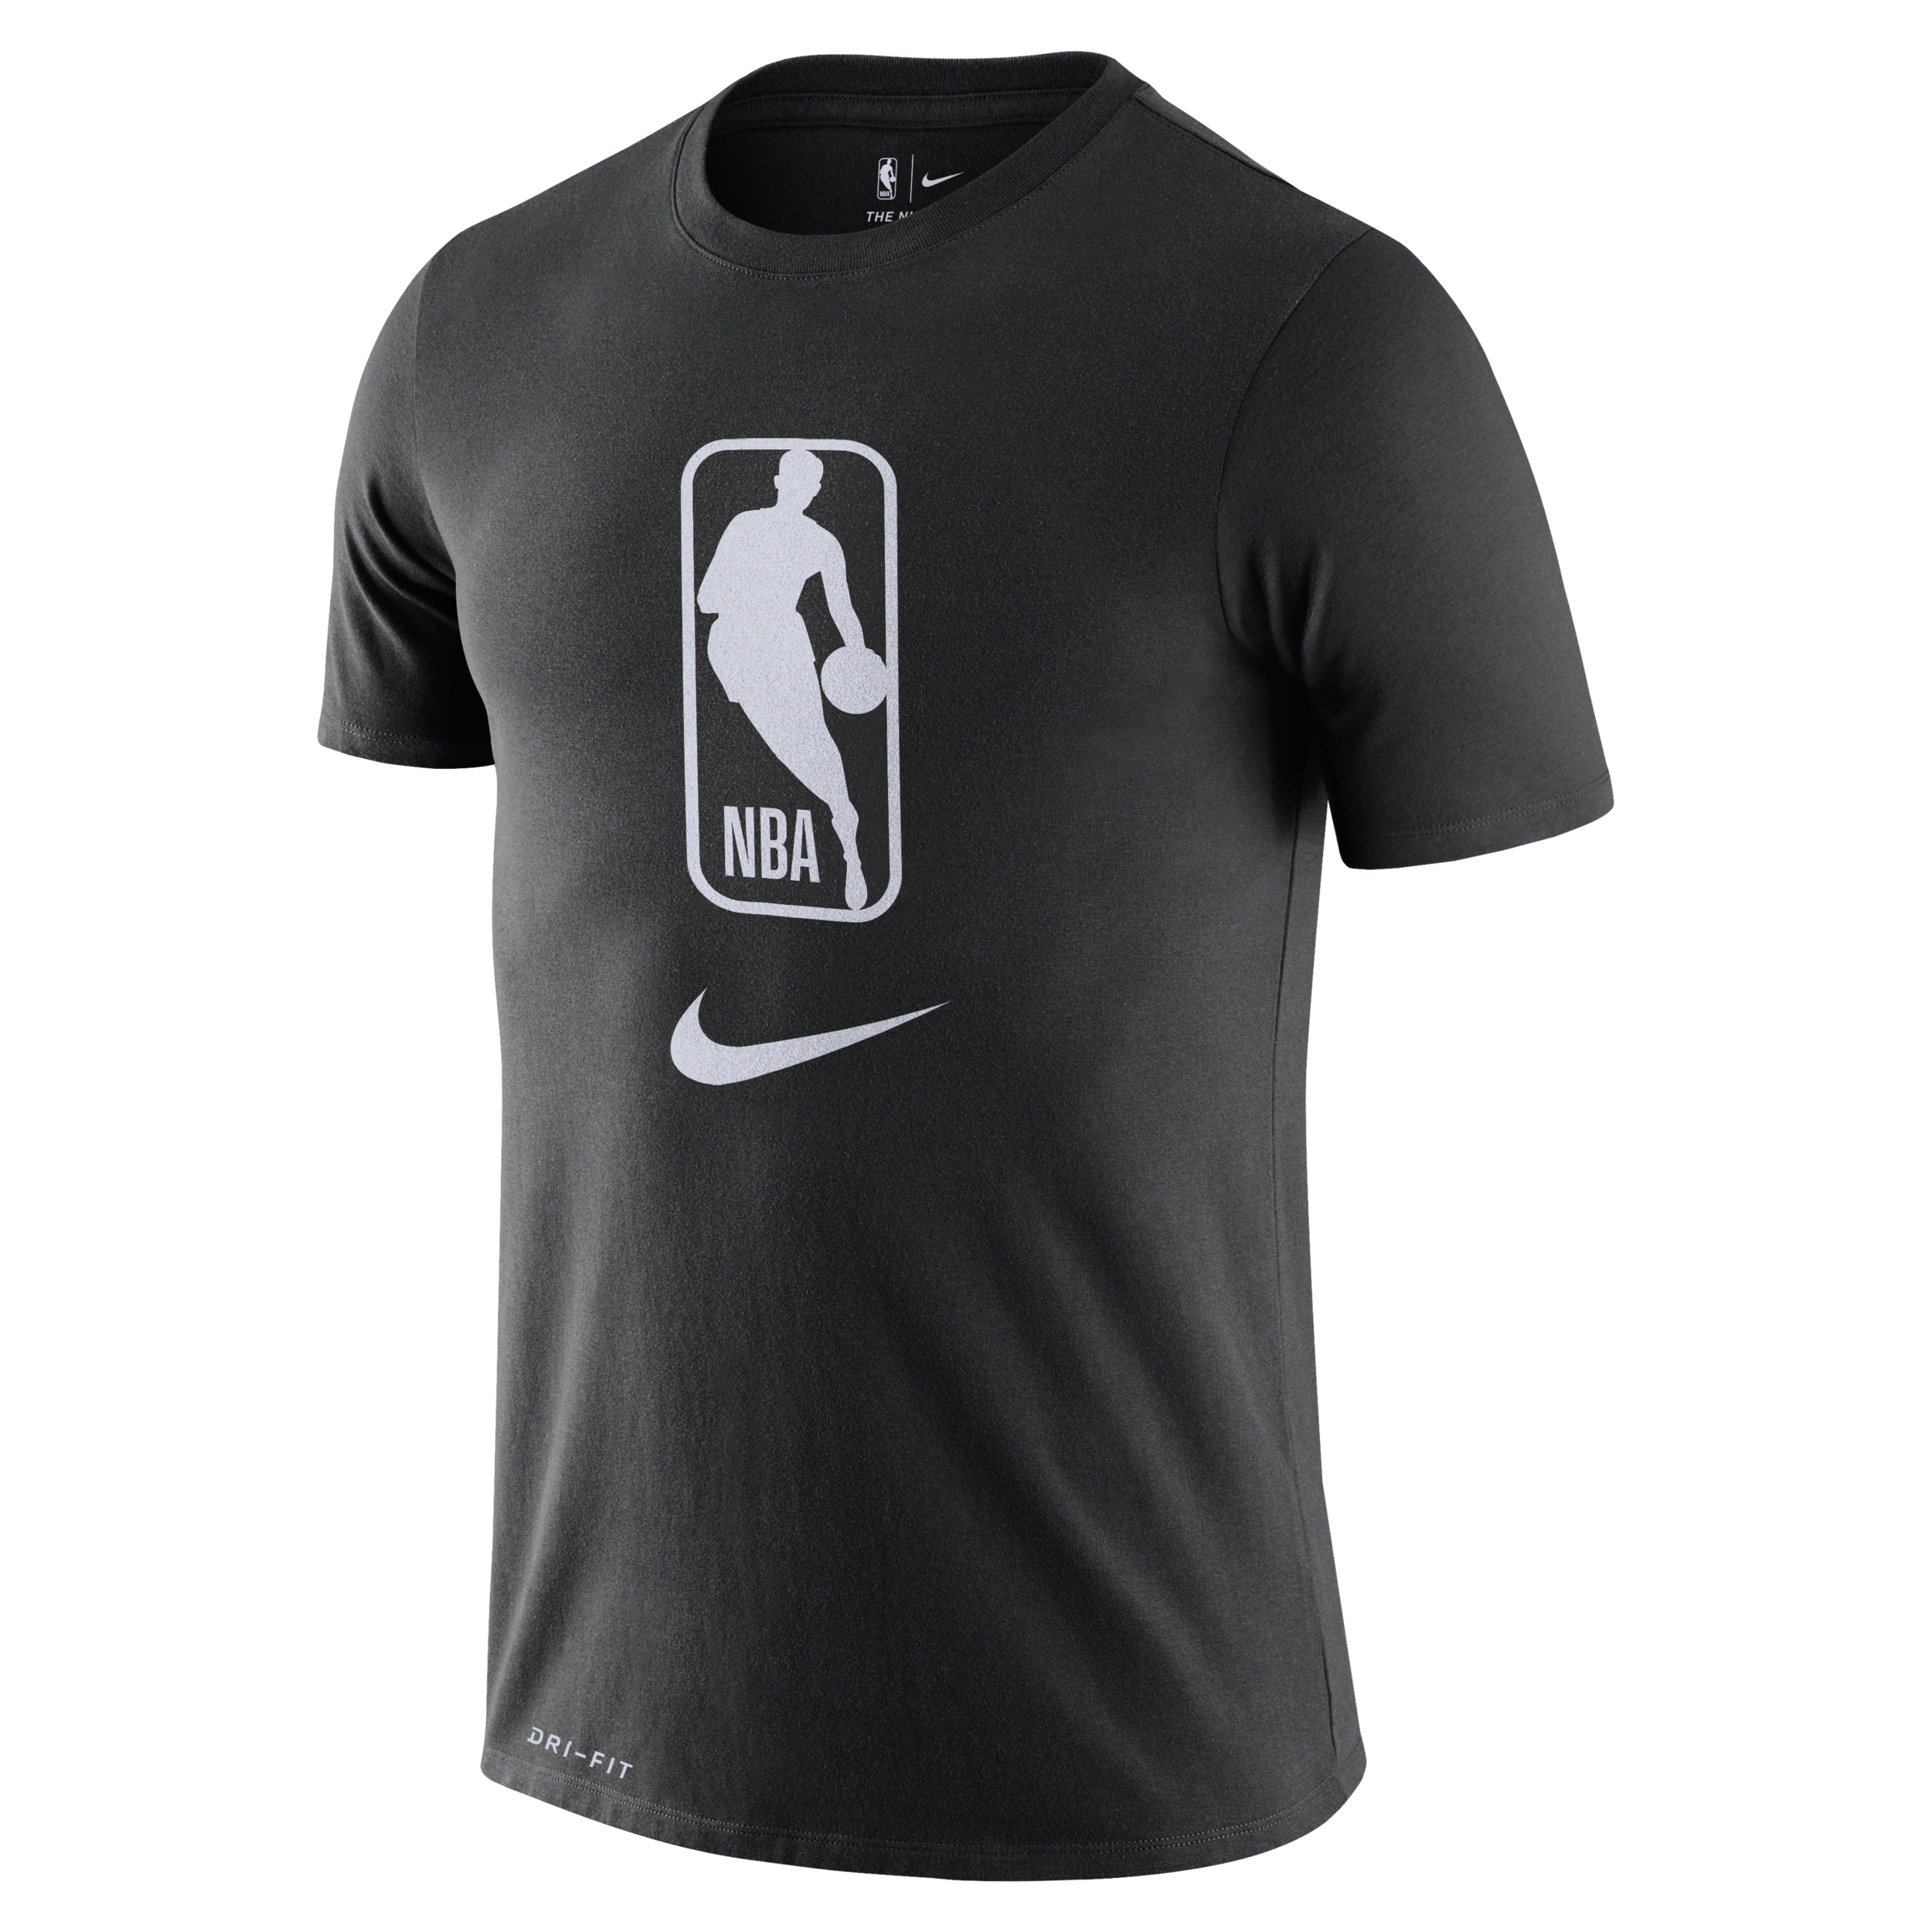 Team 31 Camiseta Nike Dri-FIT de la NBA - Hombre - Negro